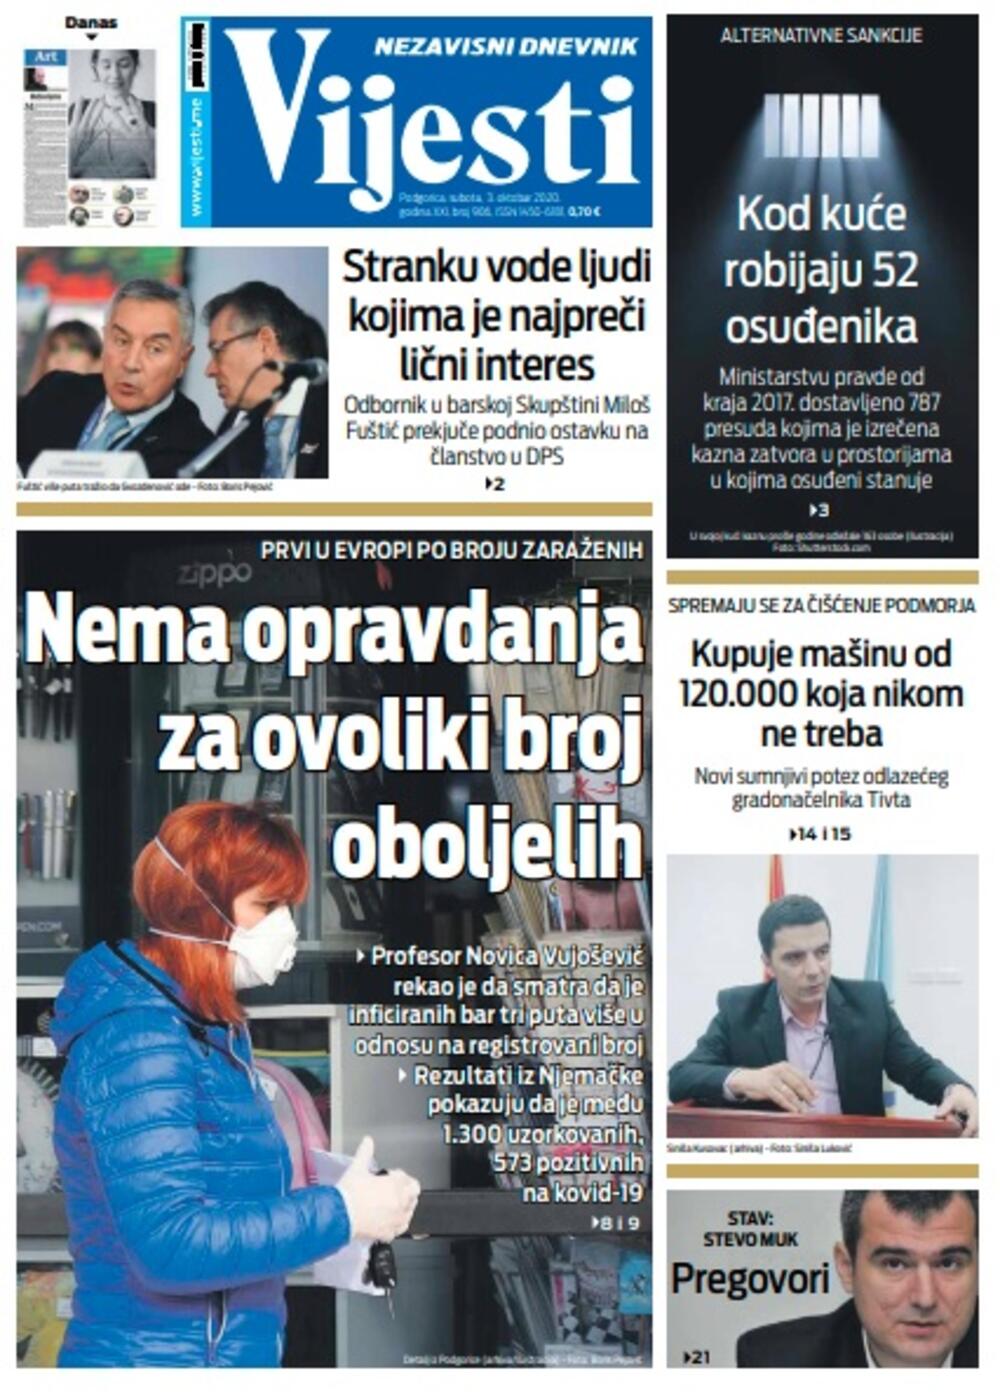 Naslovna strana "Vijesti" za subotu 3. oktobar 2020. godine, Foto: Vijesti